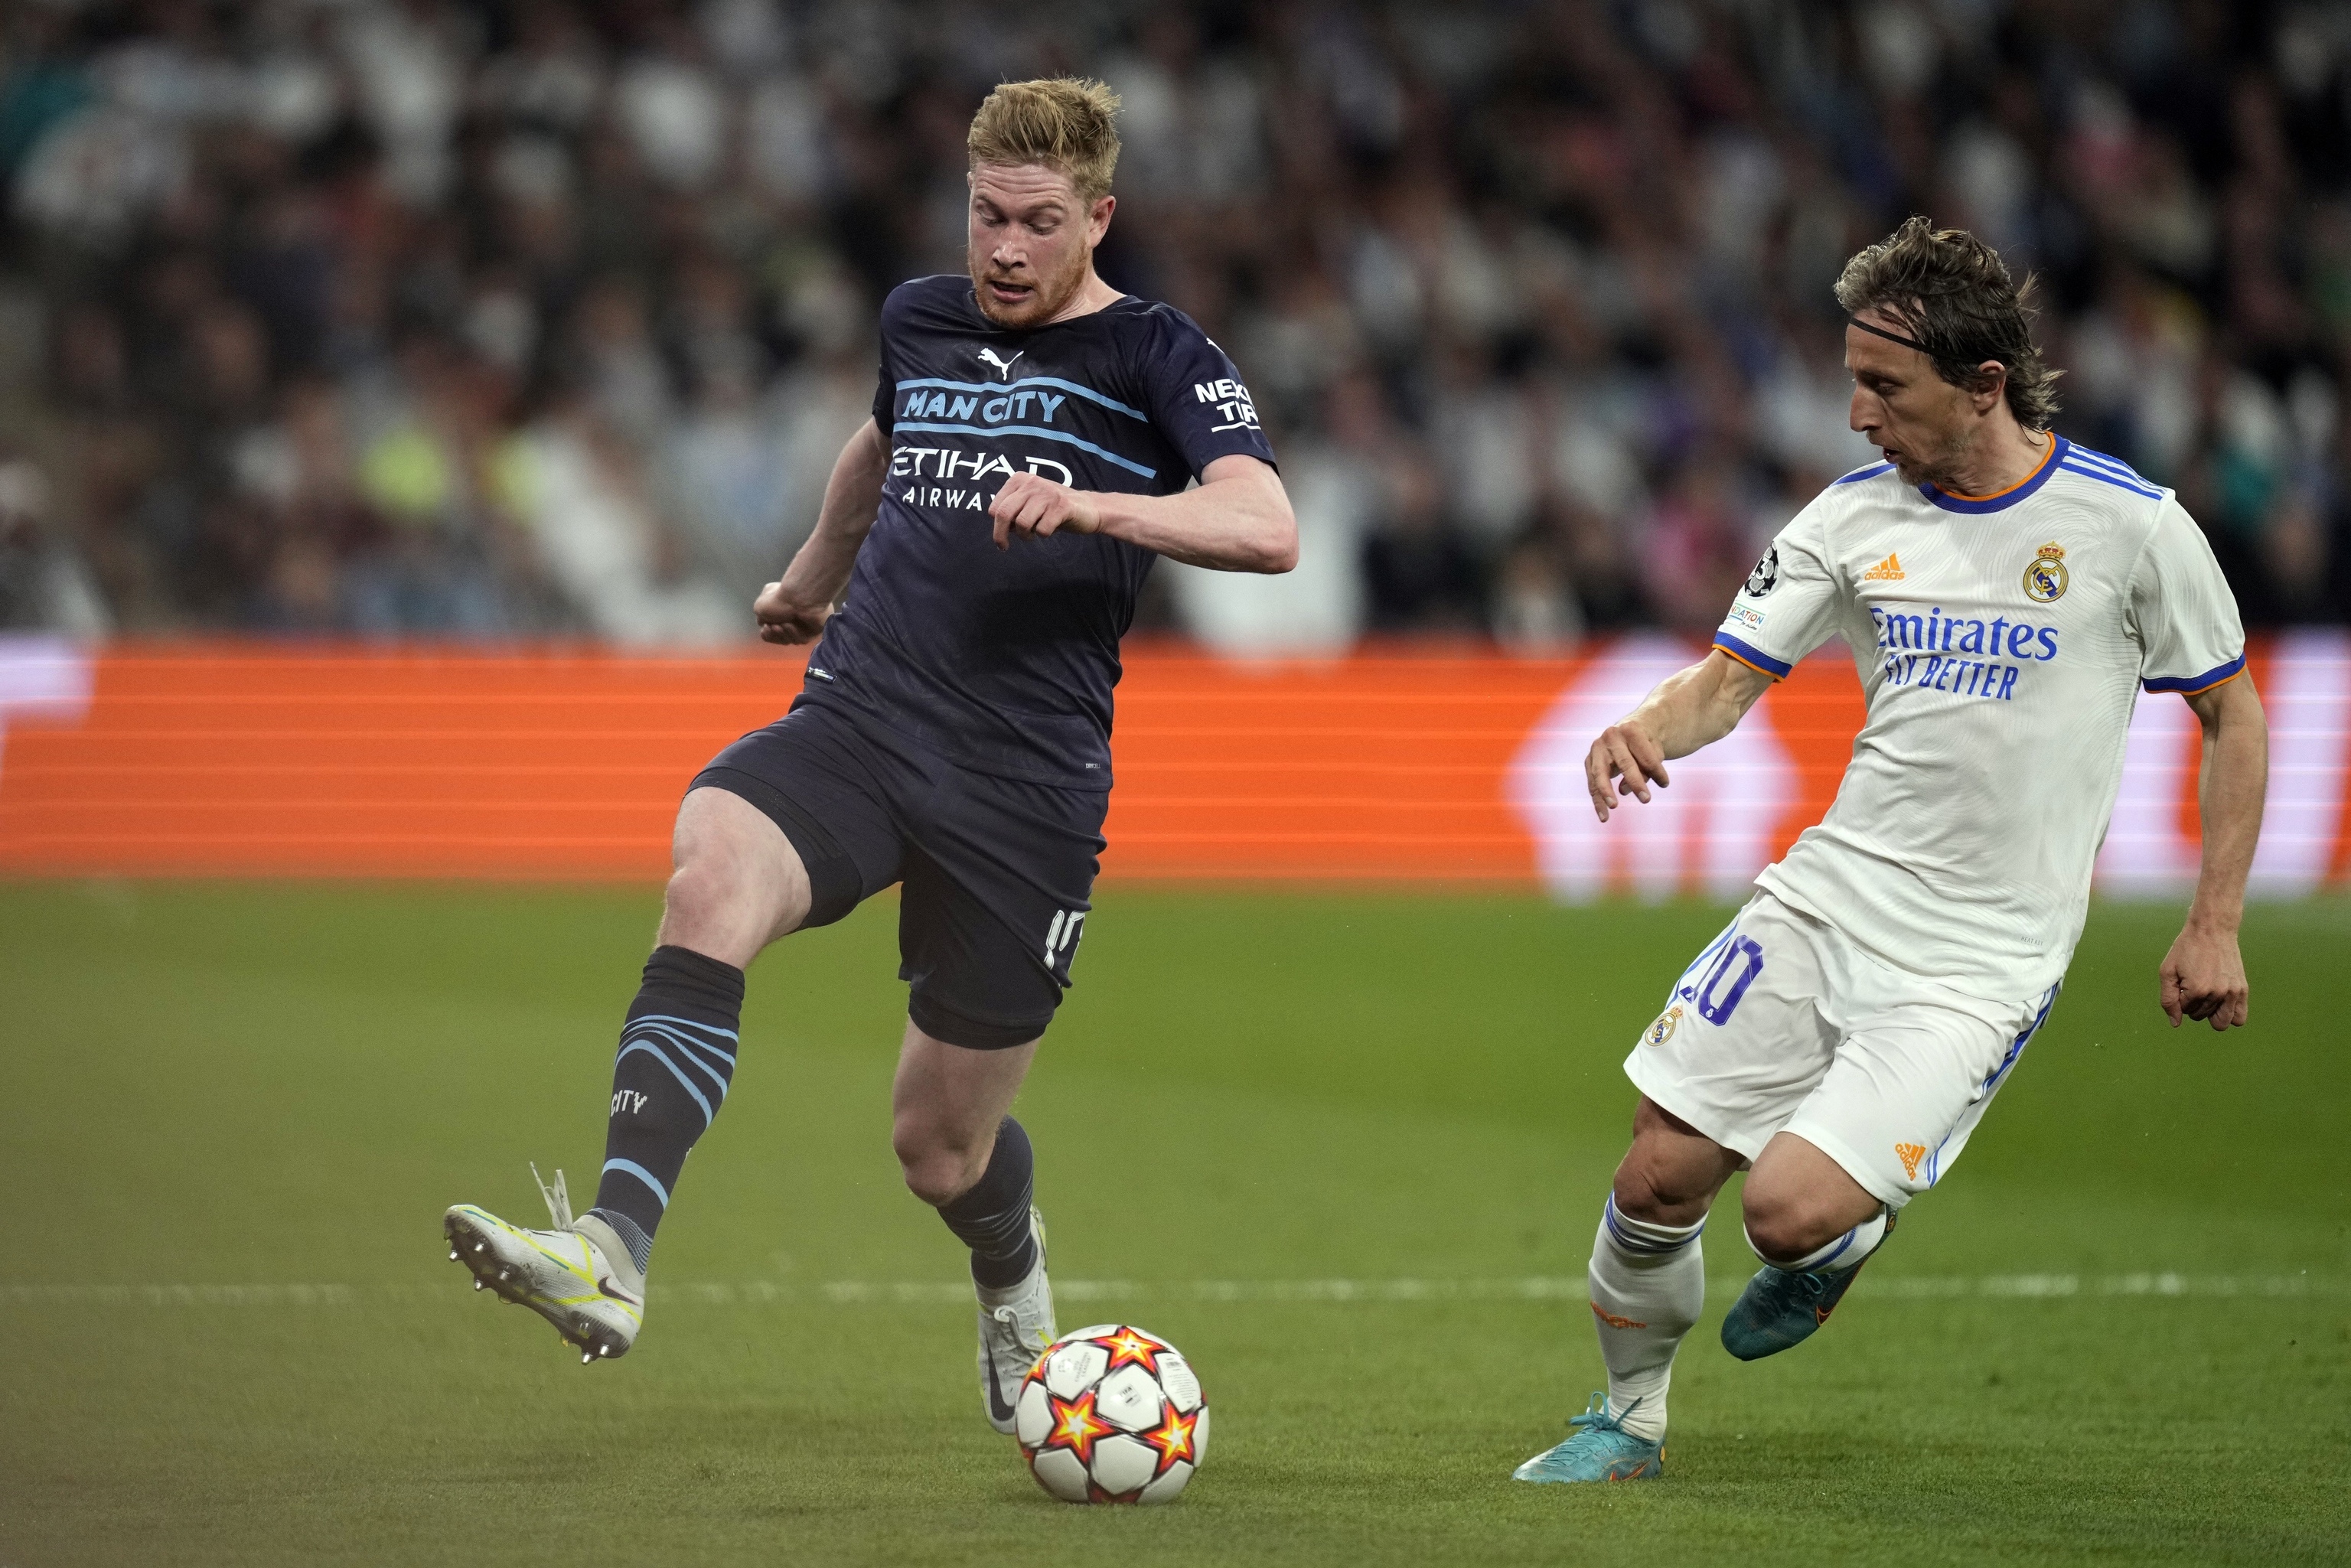 Imagen del partido del mircoles entre el Manchester City y el Real Madrid, ambos con el patrocinio de aerolneas de Emiratos rabes.